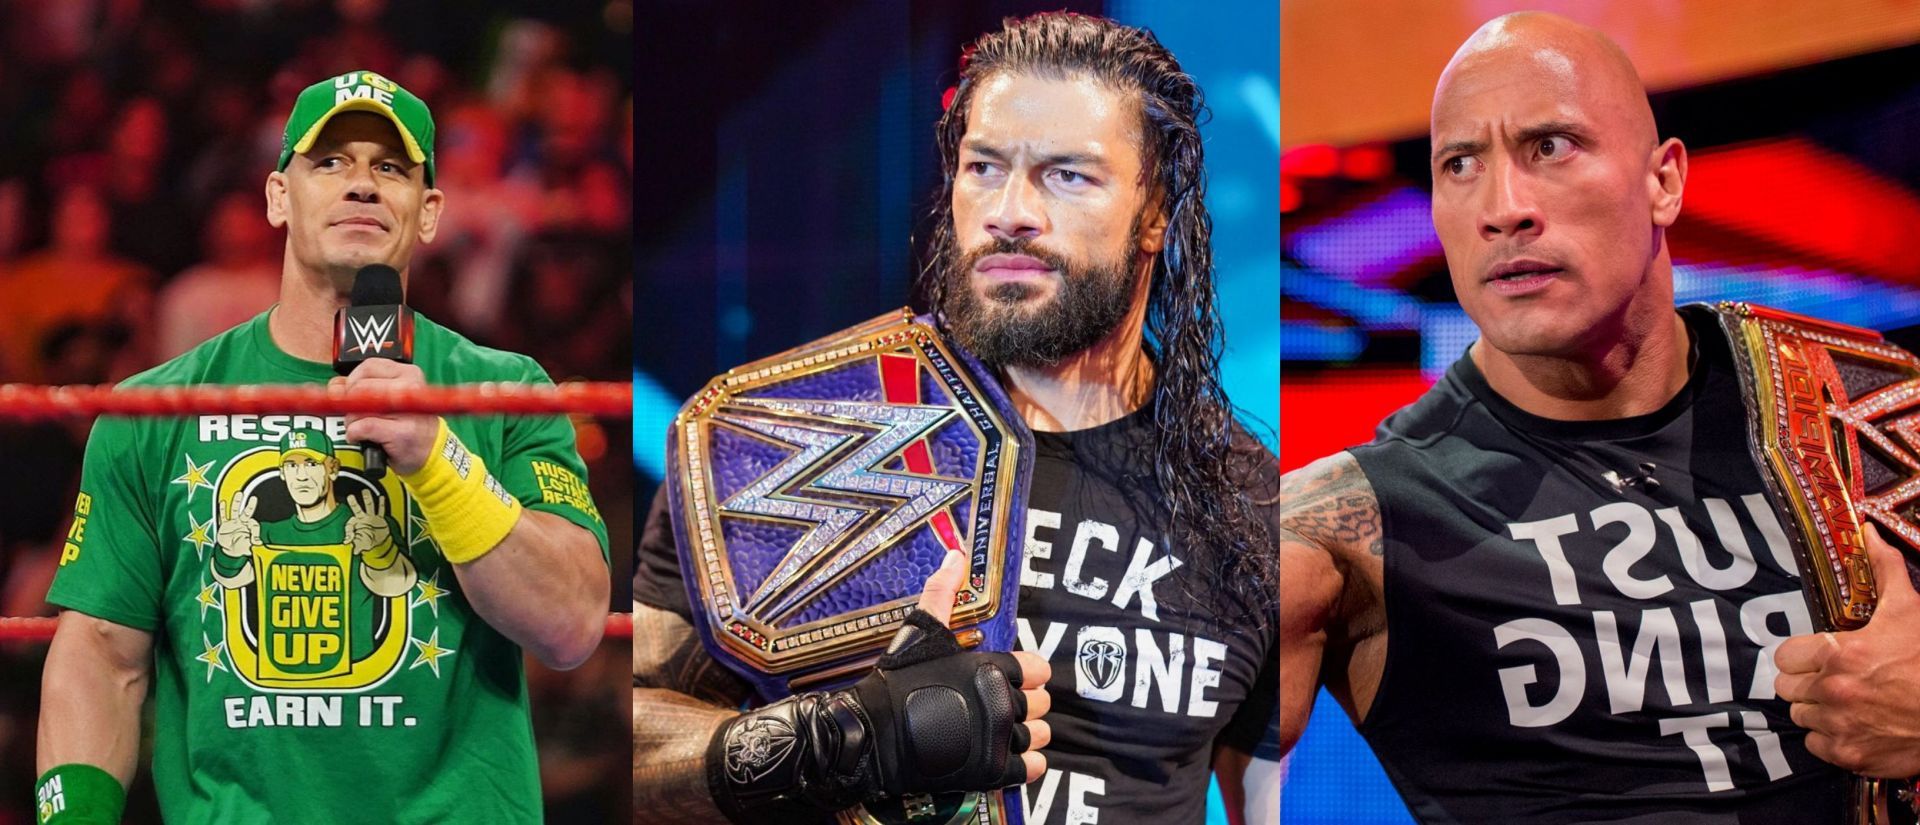 WWE दिग्गज ने रॉक और रोमन के ड्रीम मैच को लेकर दी प्रतिक्रिया 